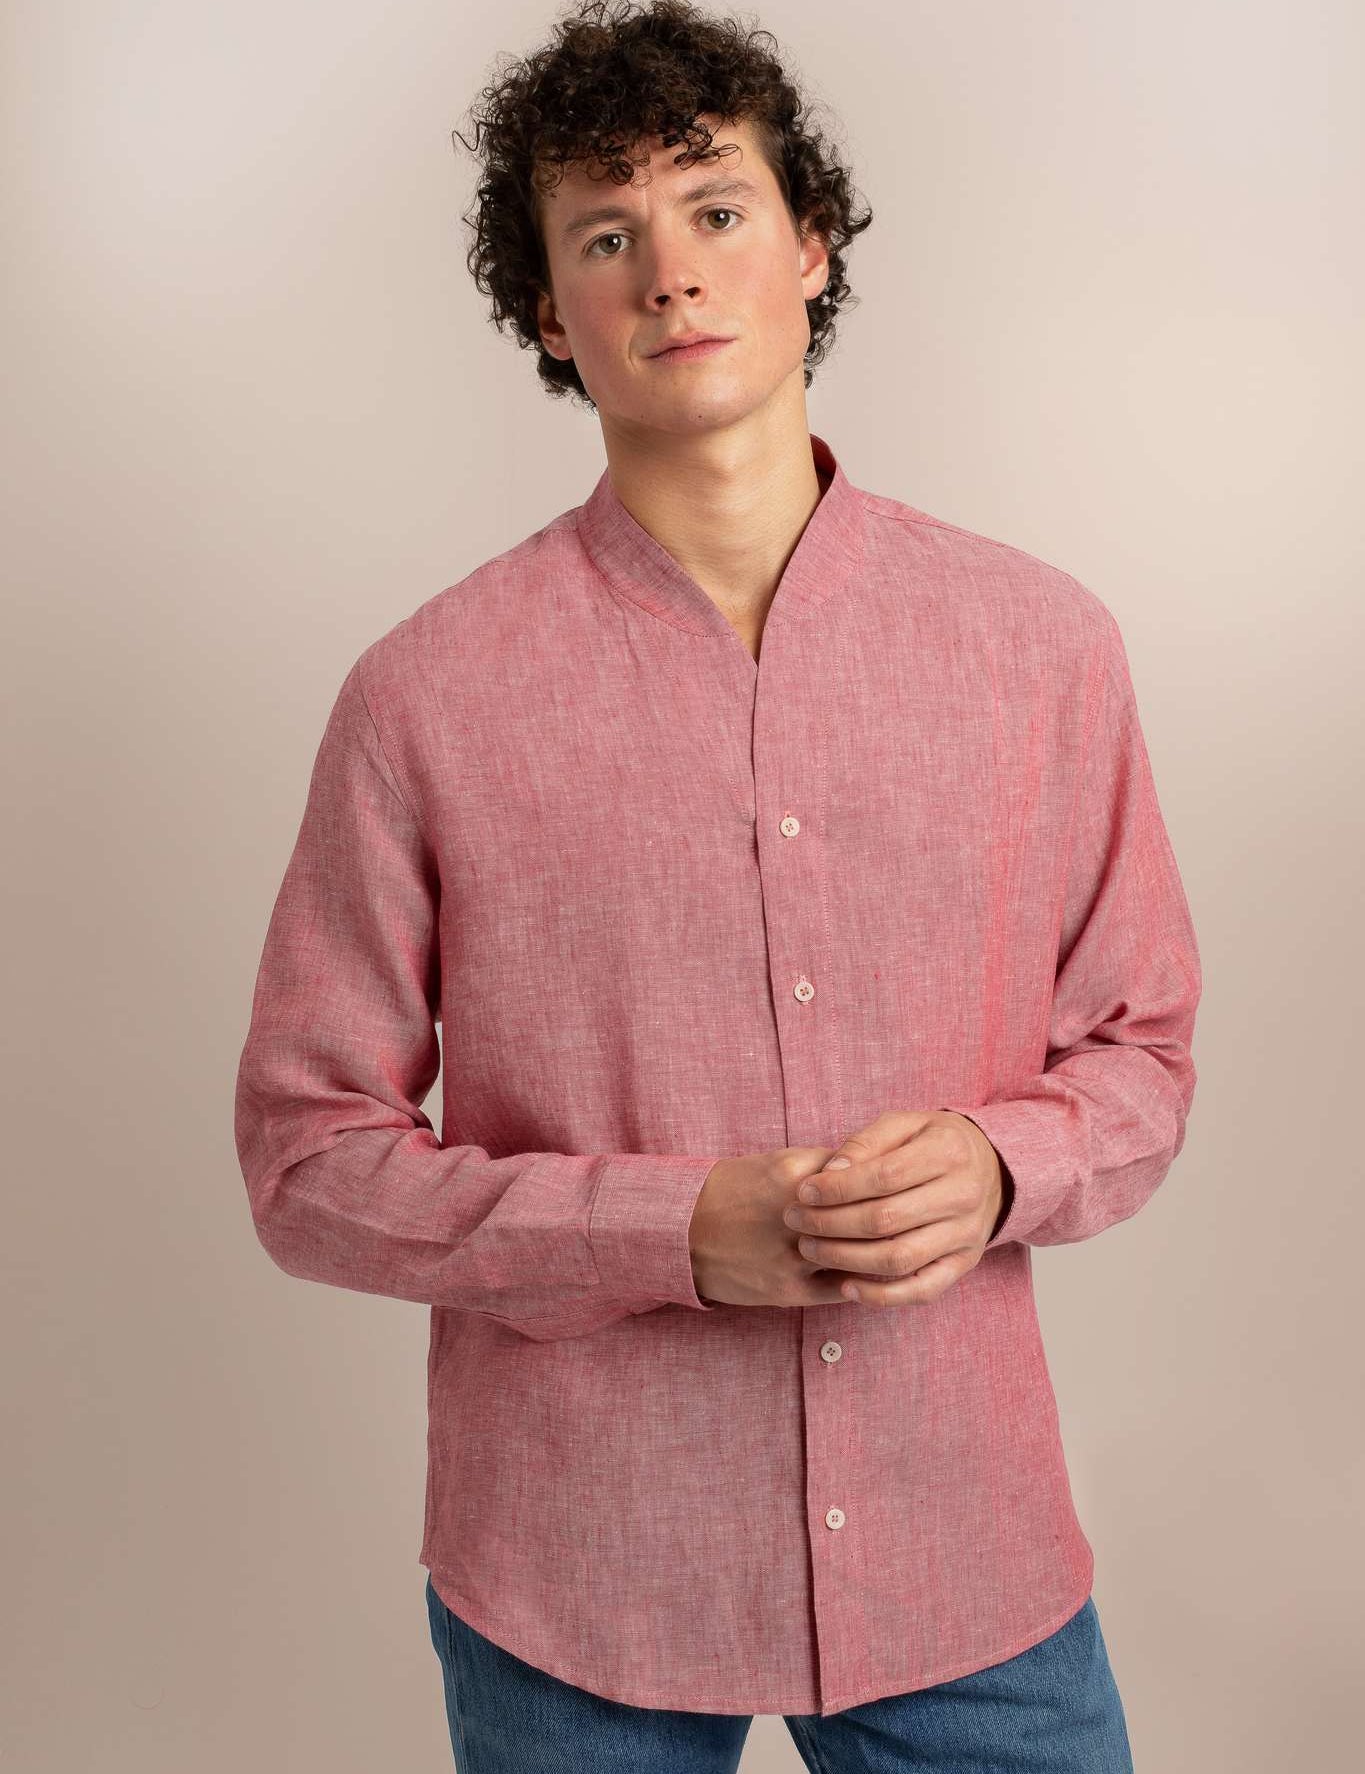 mens-pink-linen-shirt-front-view_558c199d-ac59-436c-8ee1-312bd245b3d7.jpg